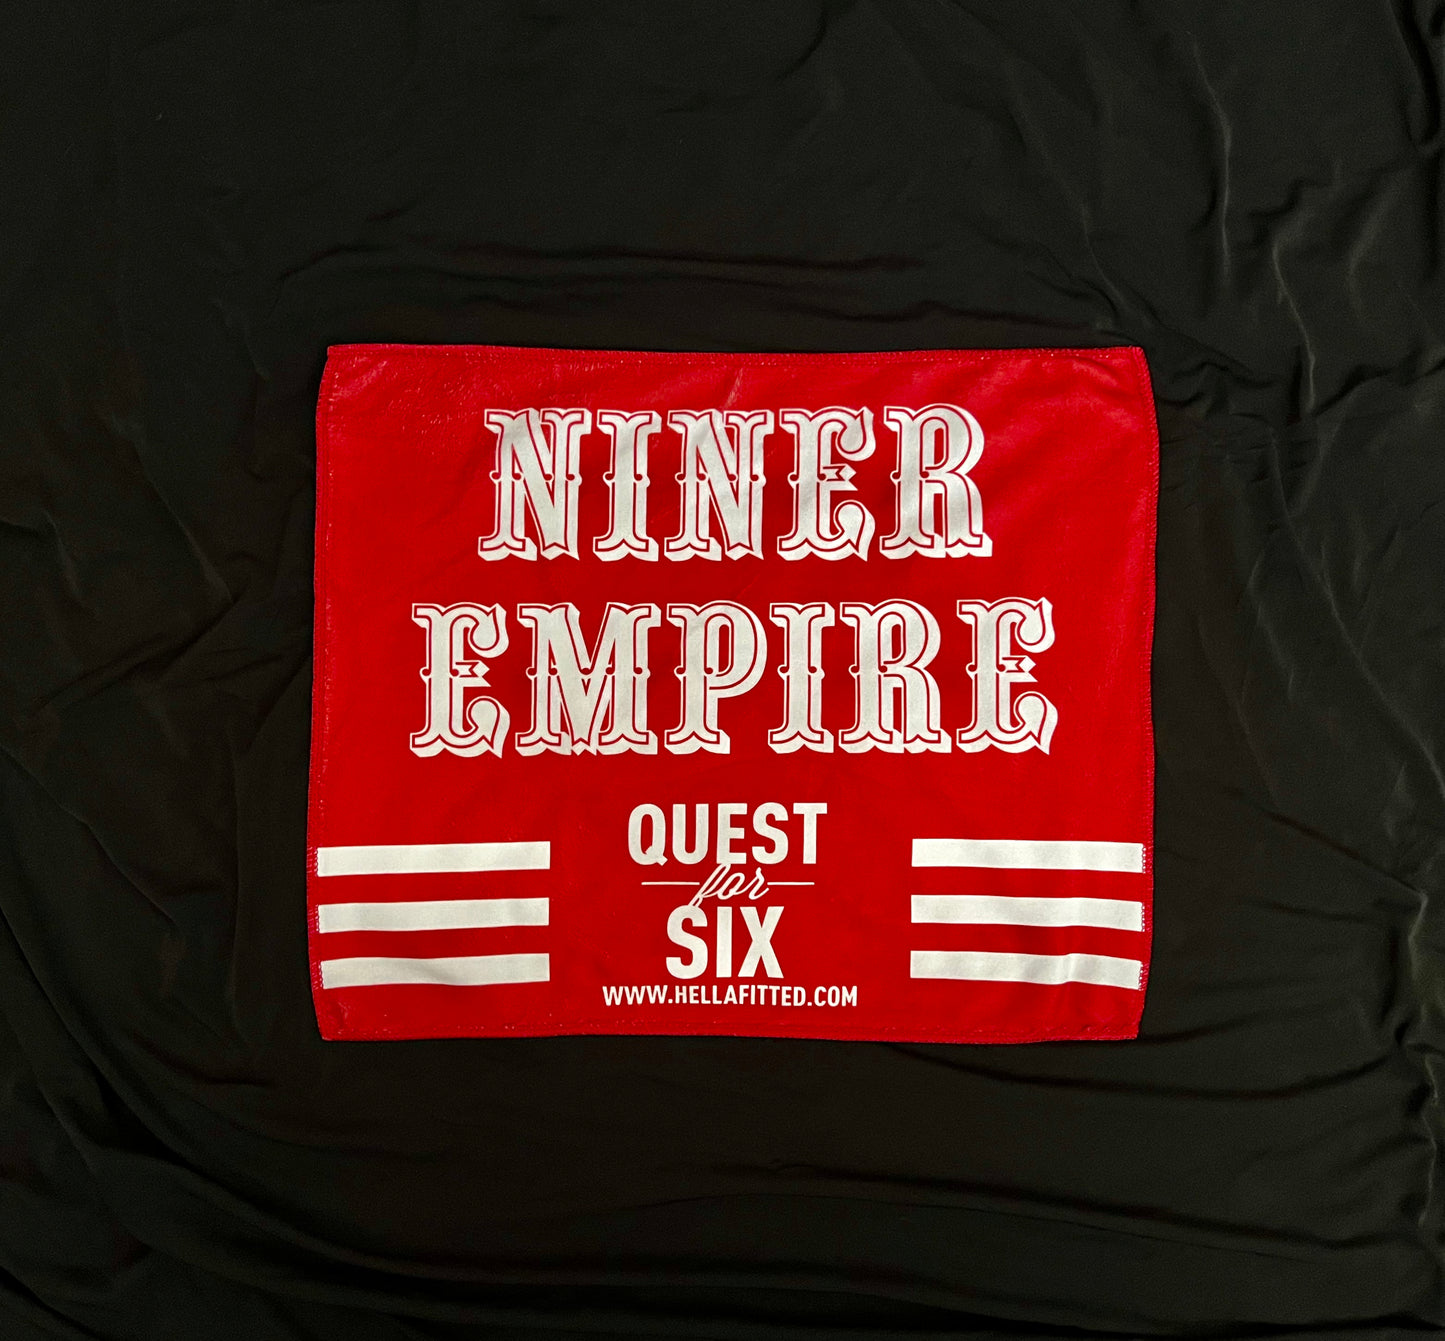 NINER EMPIRE QUEST FOR SIX TOWEL